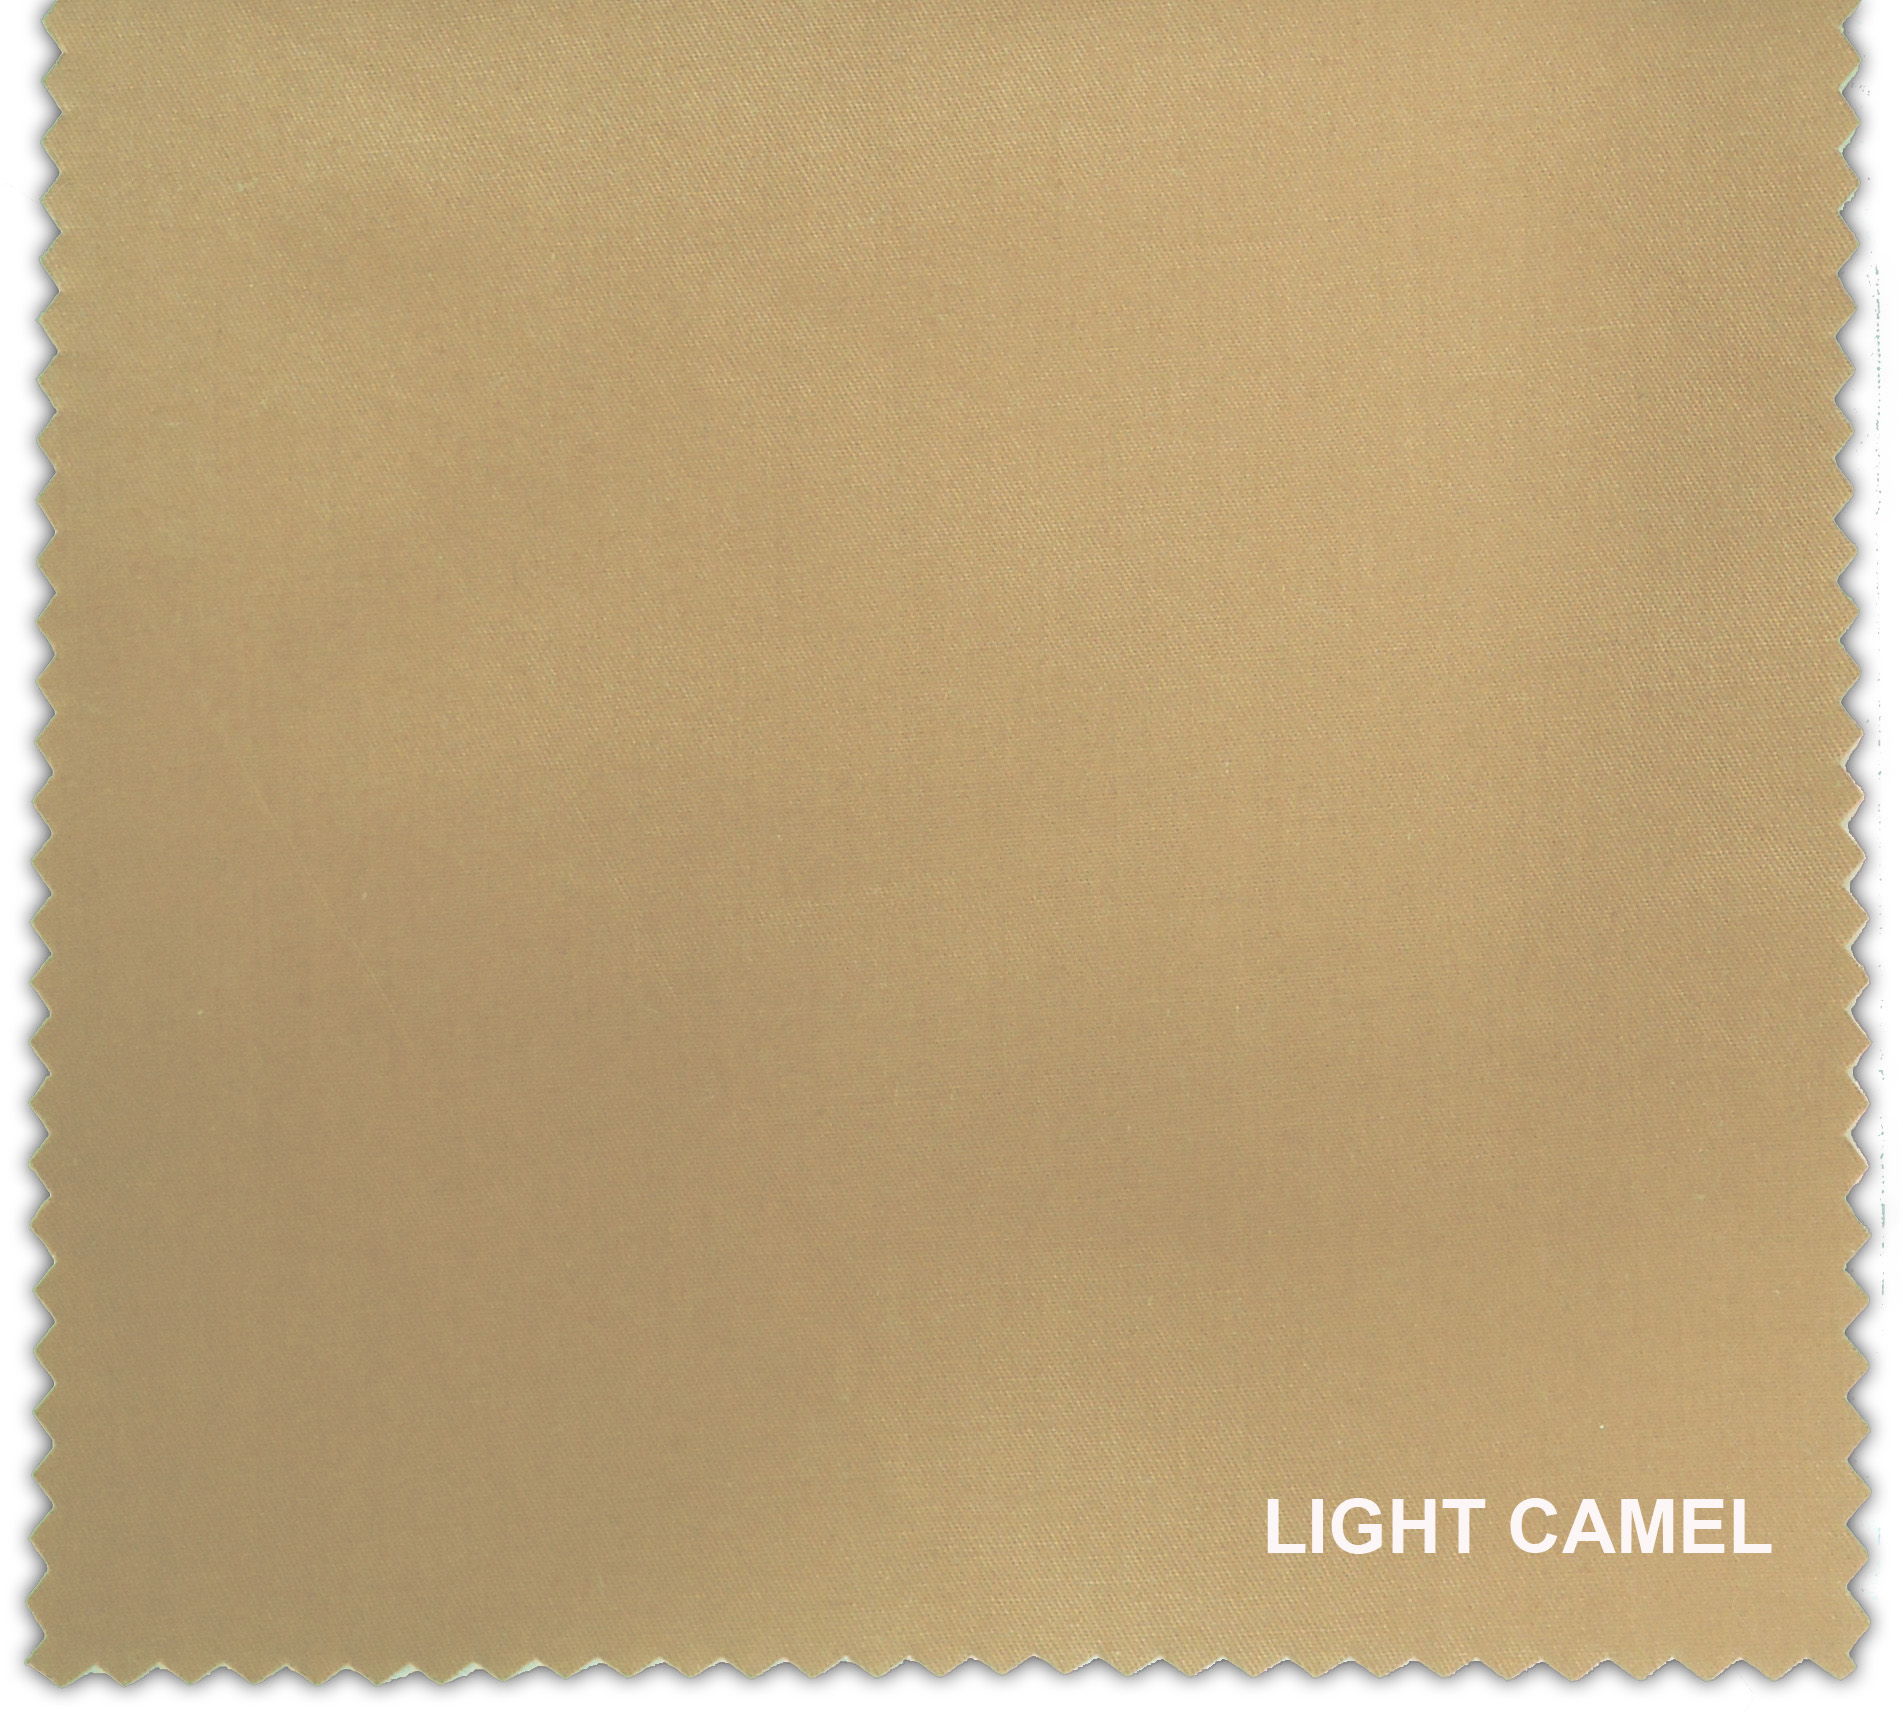 LIGHT CAMEL